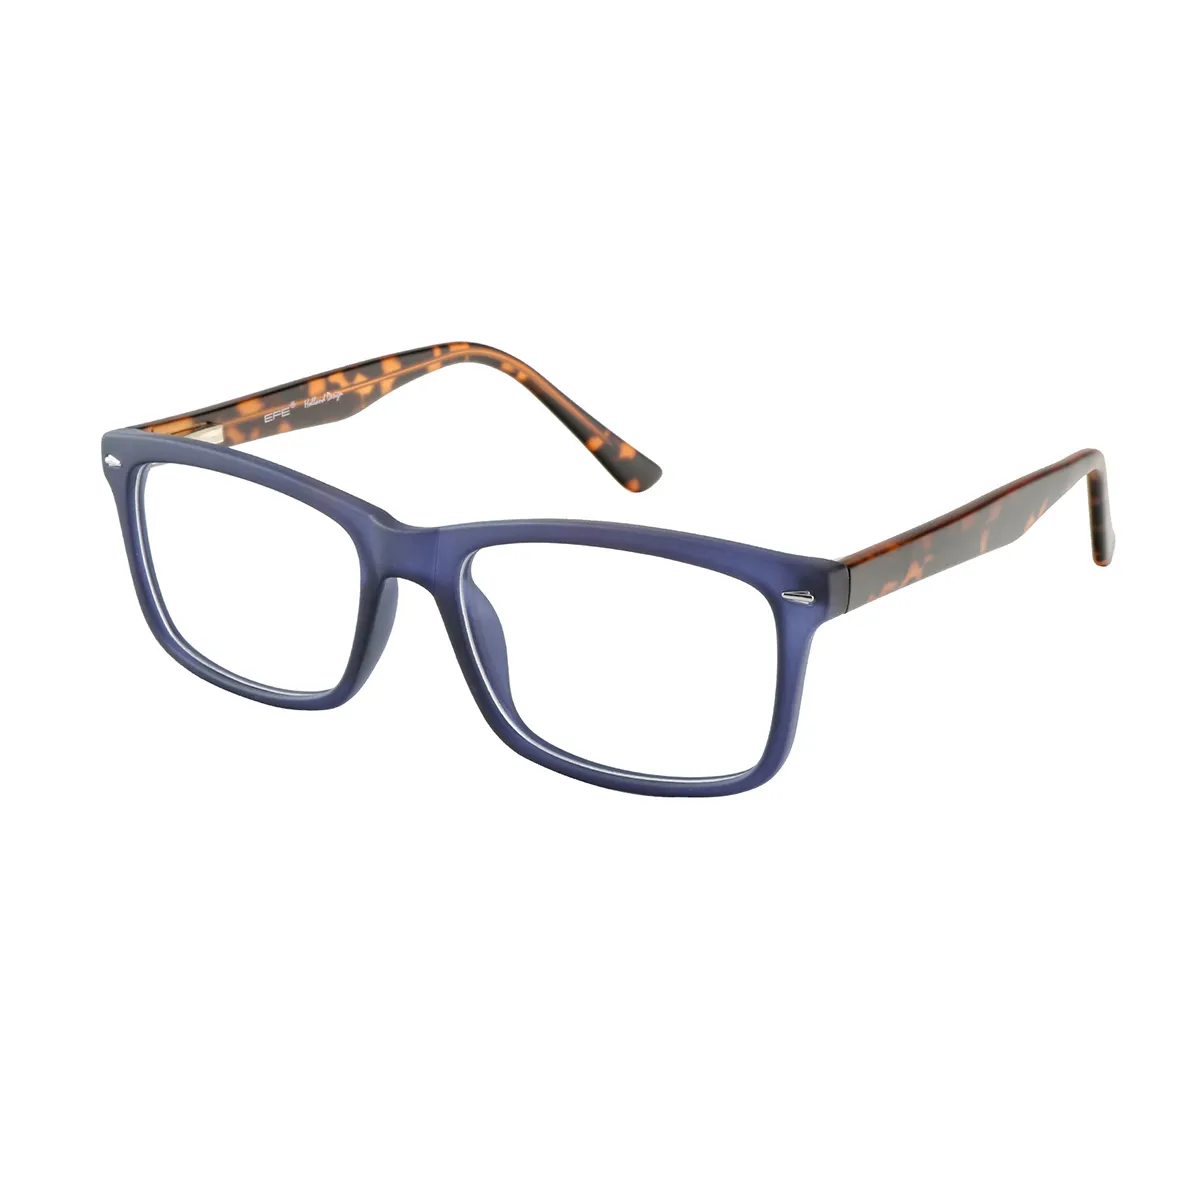 Albutt - Rectangle Blue-Tortoiseshell Glasses for Men & Women